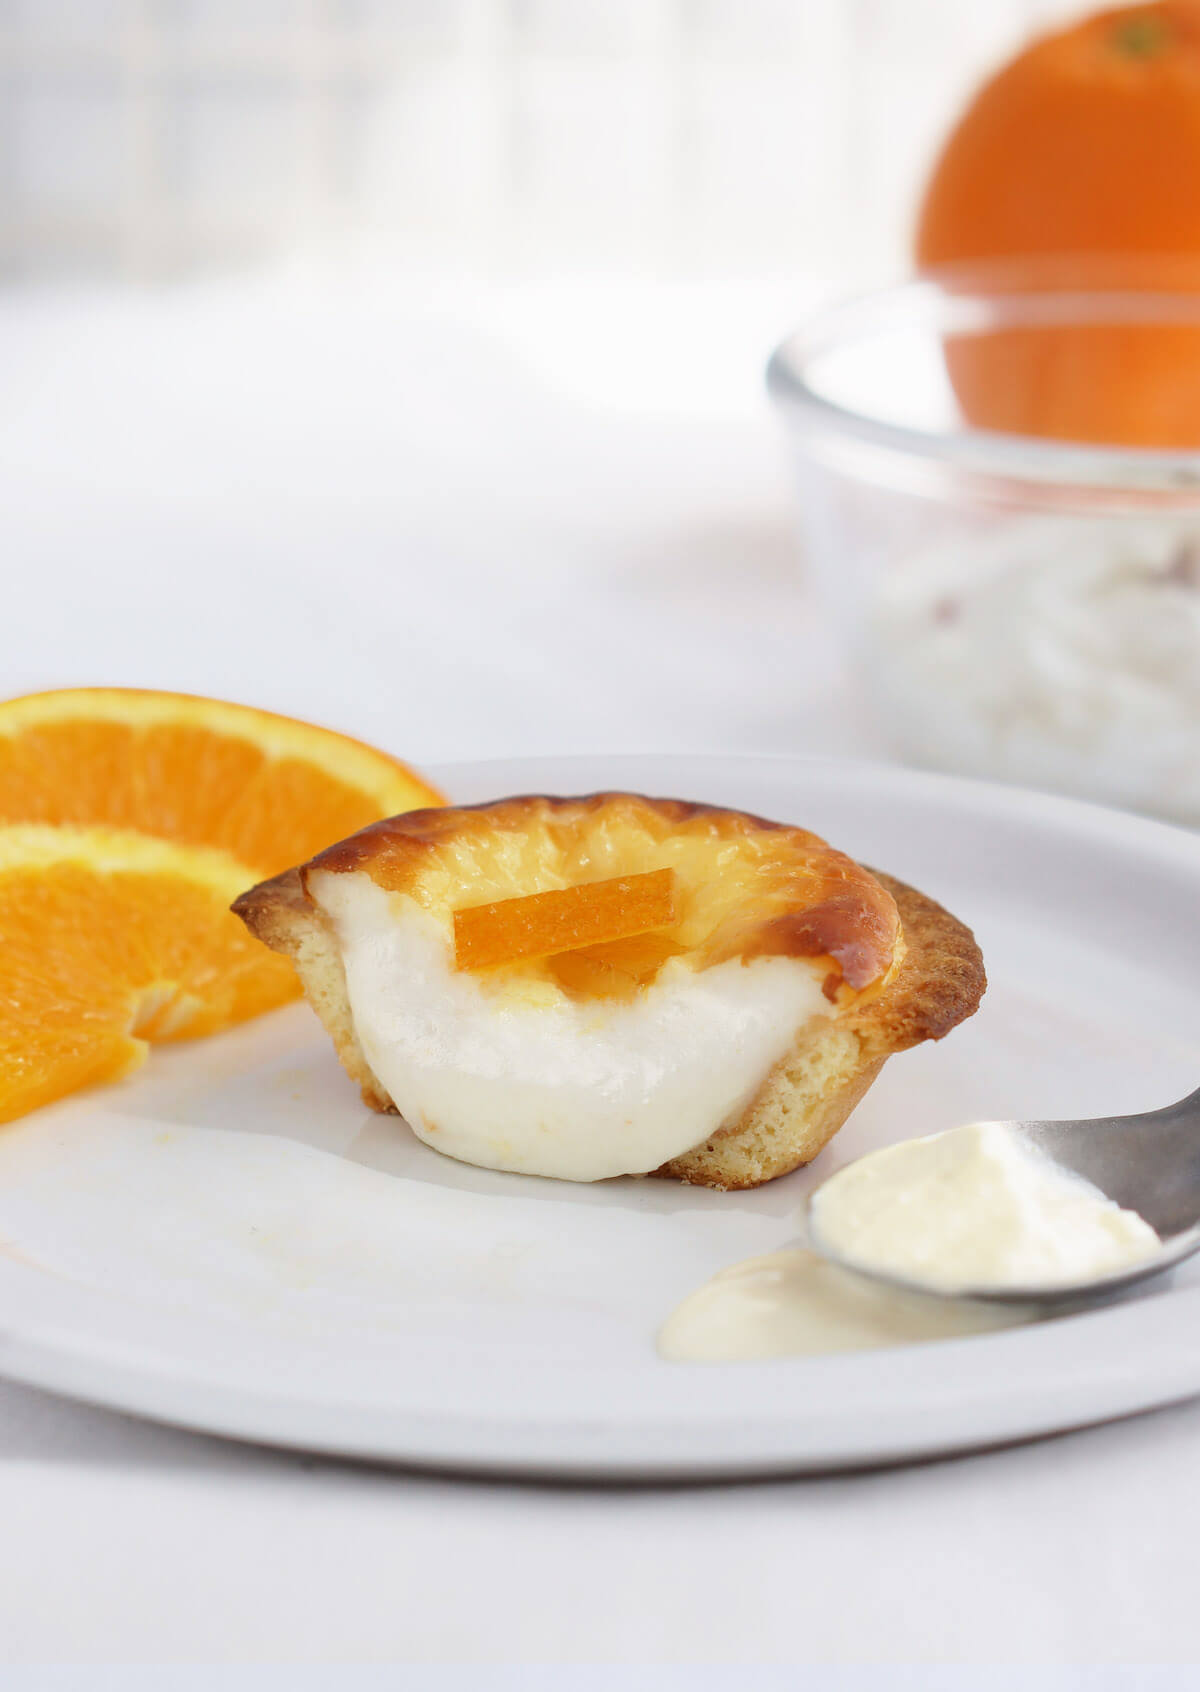 「BAKE CHEESE TART」、ギリシャヨーグルトとオレンジピールを使用した「オレンジヨーグルトチーズタルト」6月1日から期間限定販売！ gourmet190522bakecheesetart_info